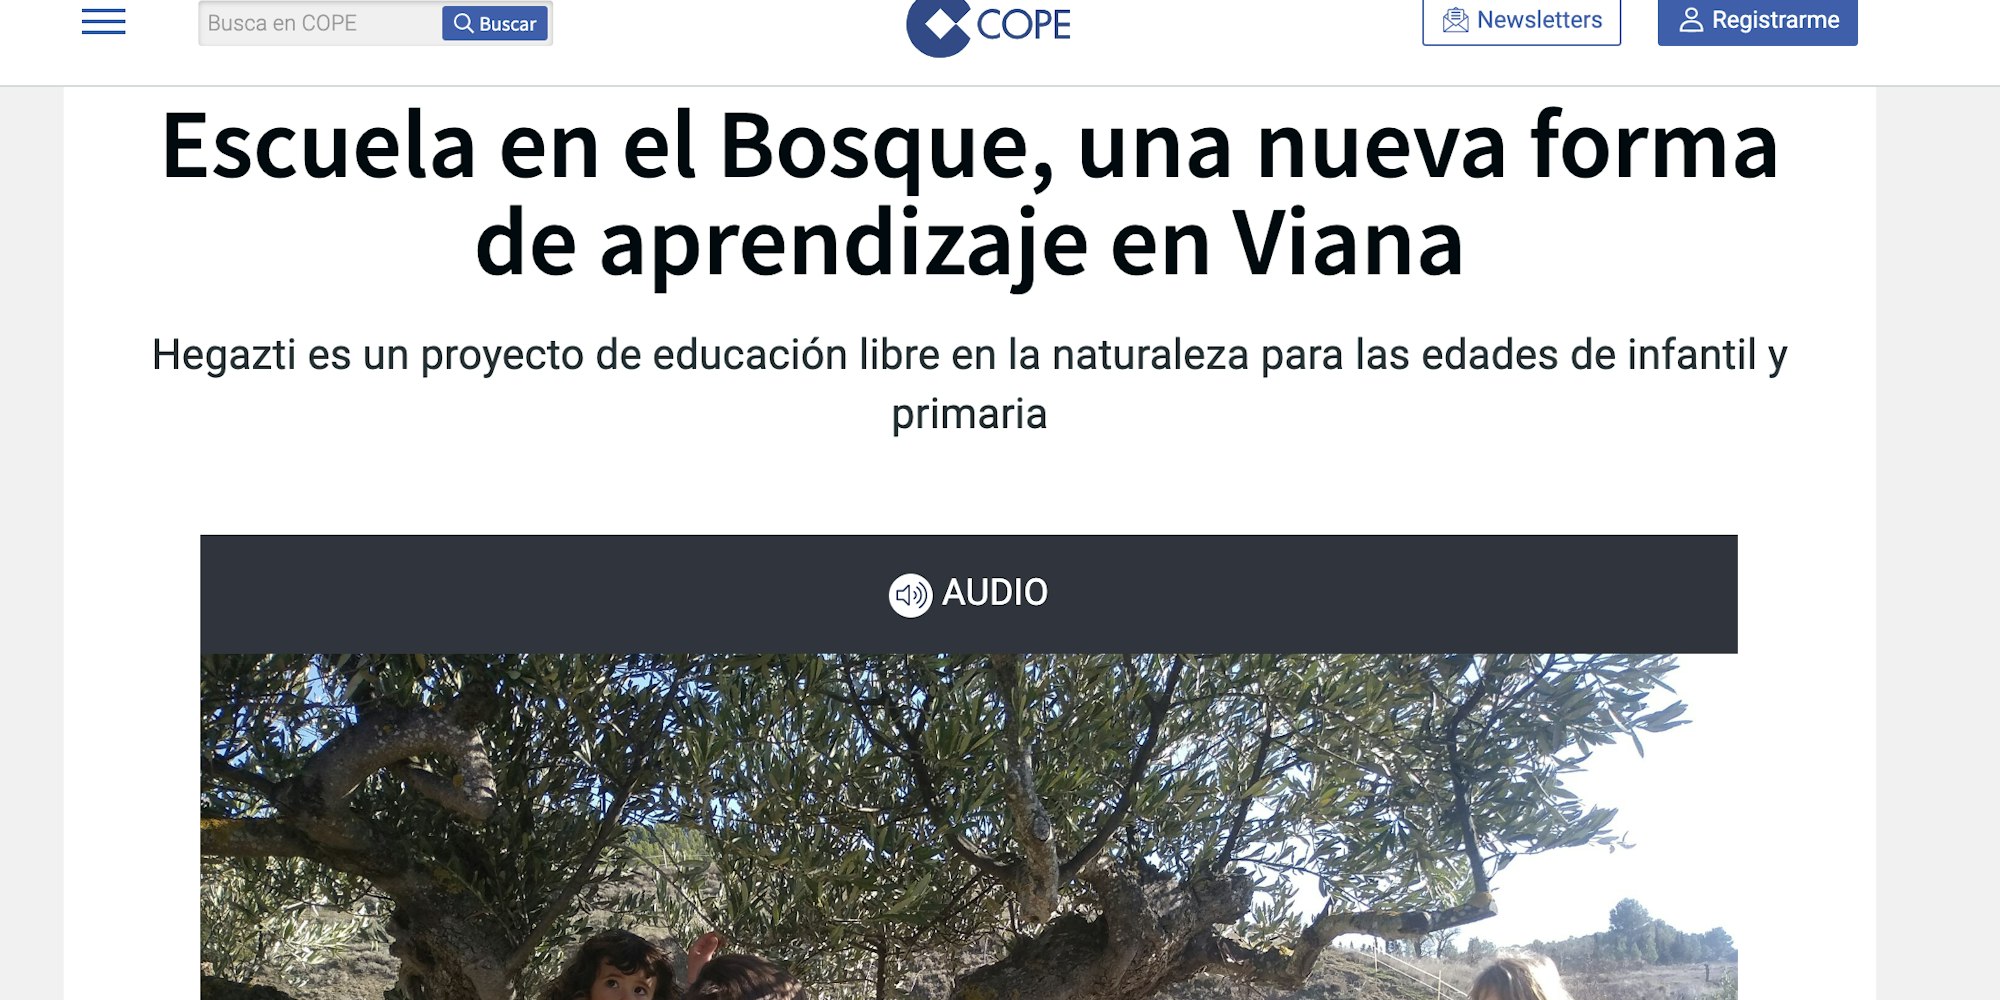 Cover Image for Viana y su escuela bosque: Hegazti